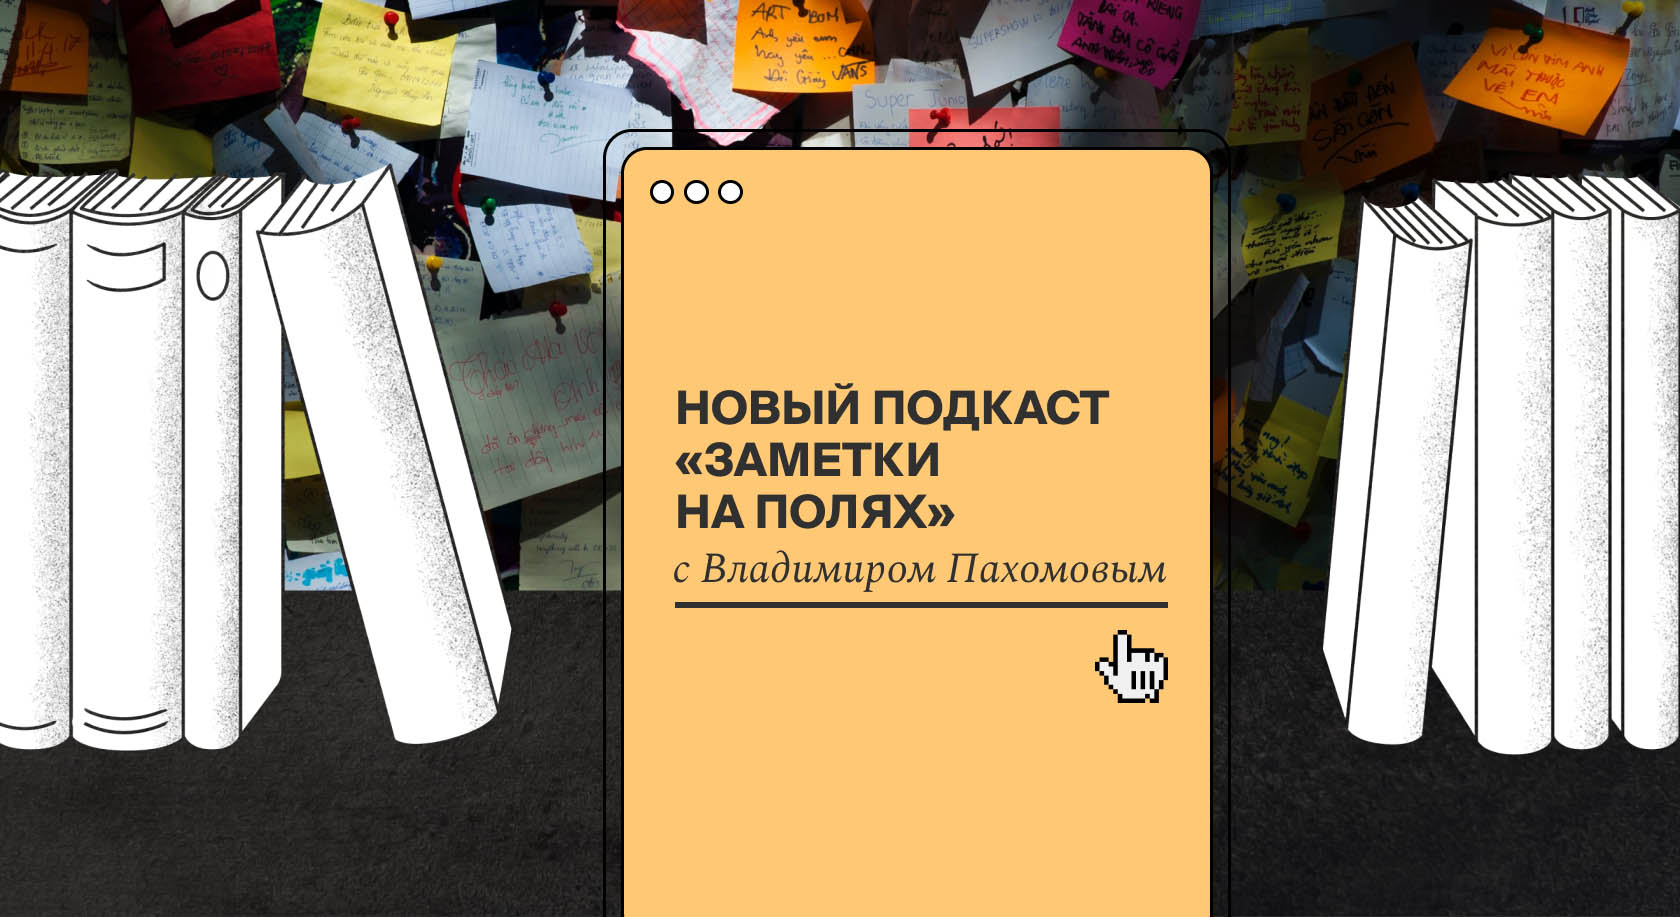 Появился новый подкаст о русском языке «Заметки на полях»